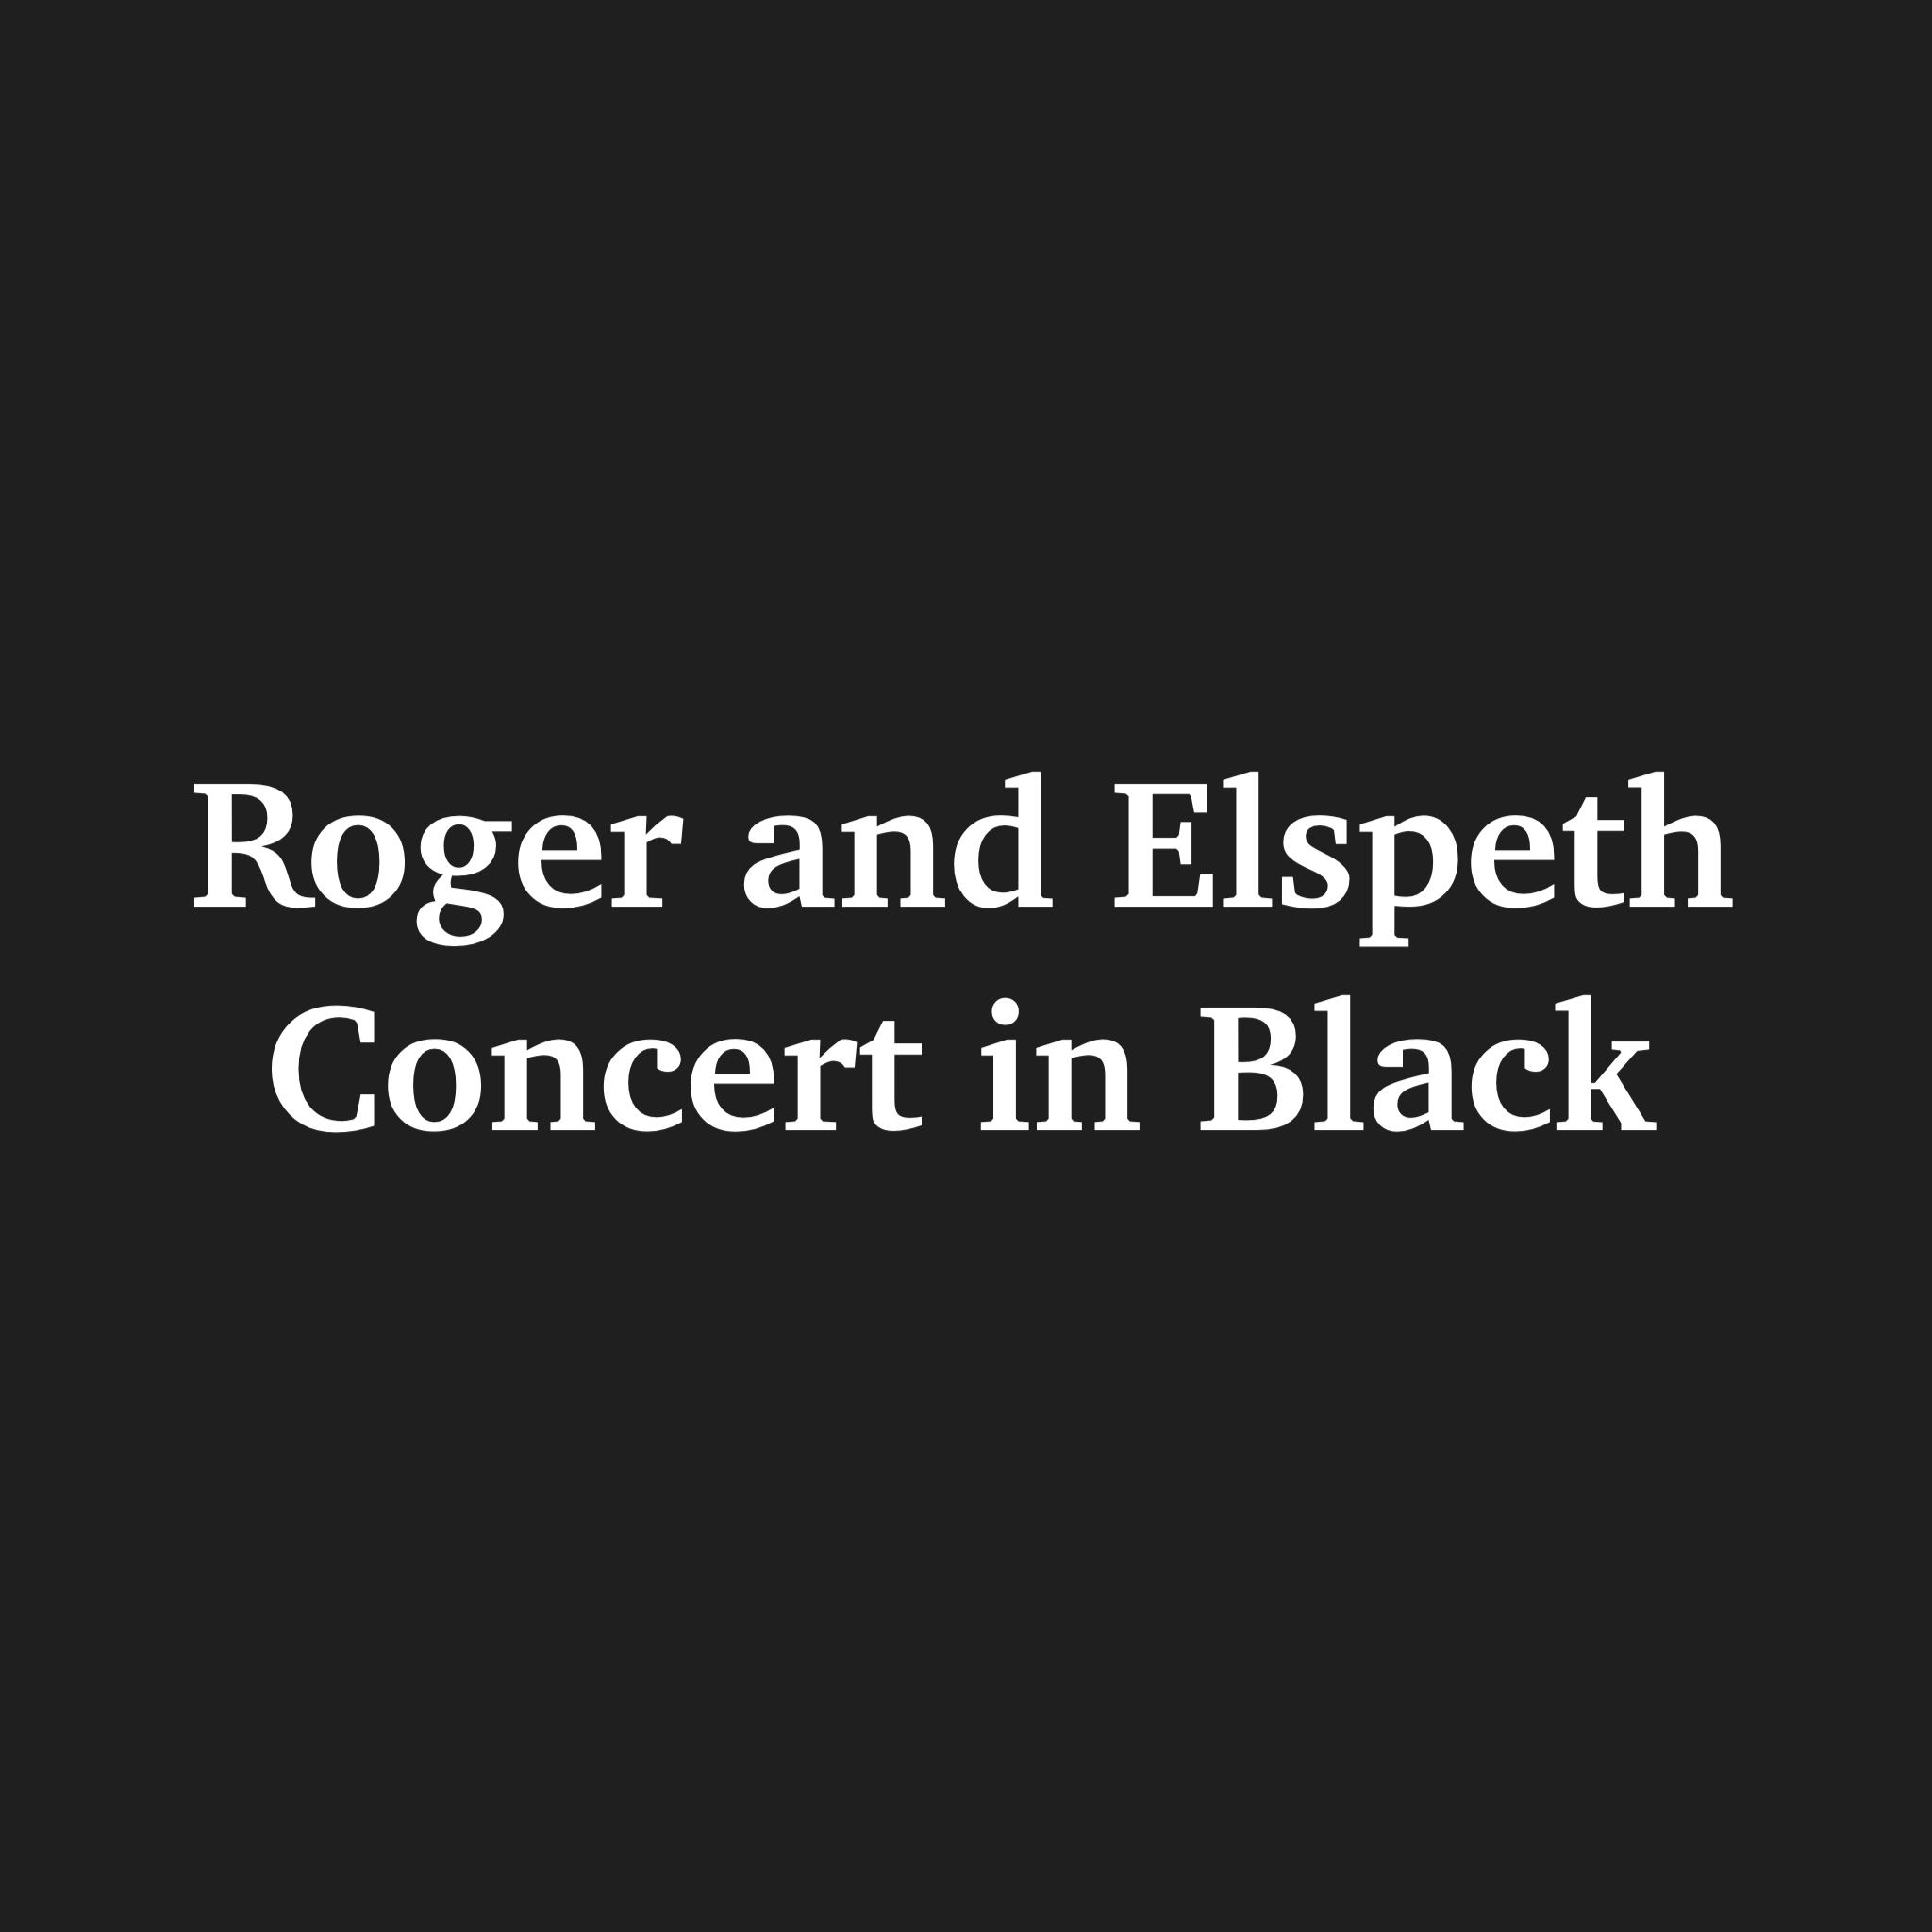 Roger and Elspeth, Concert in Black